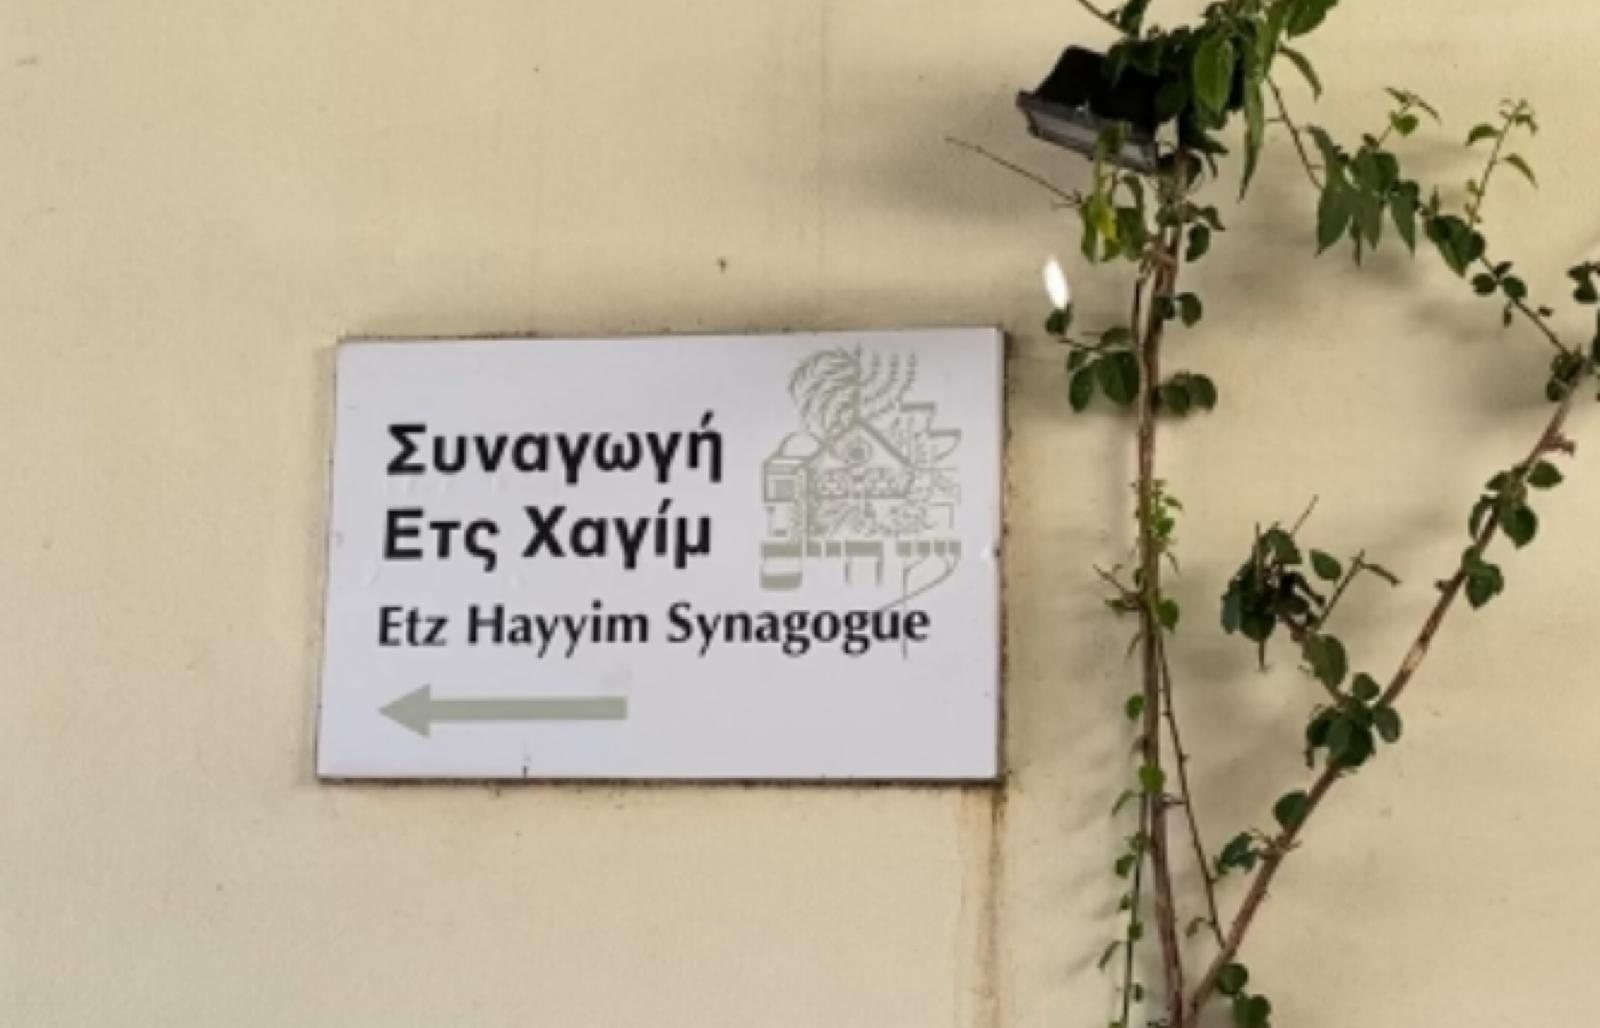 השלט המורה על מיקום בית הכנסת "עץ החיים" בחאניה (צילום: עמית קוטלר)